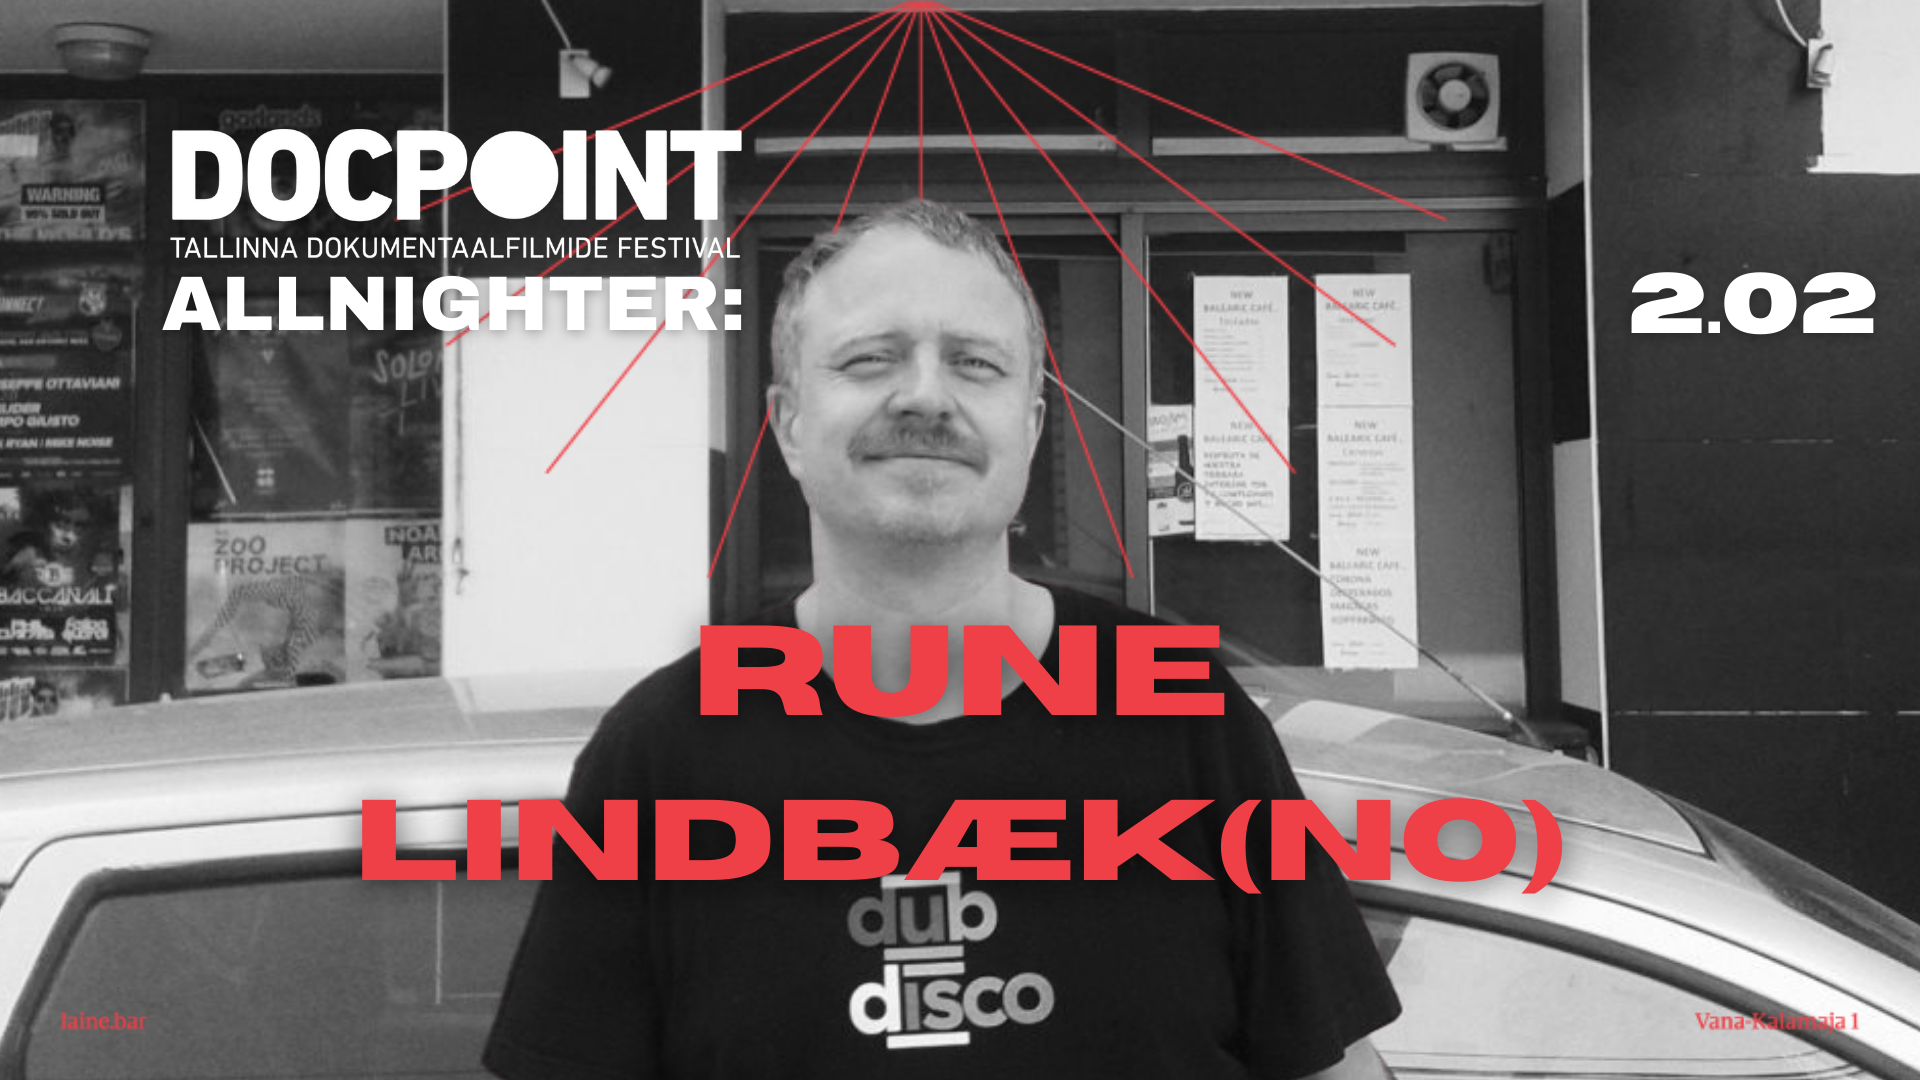 Docpoint Allnighter: Rune Lindbæk (NO) // DJ Rain Tolk, Ott Kelpman - フライヤー表